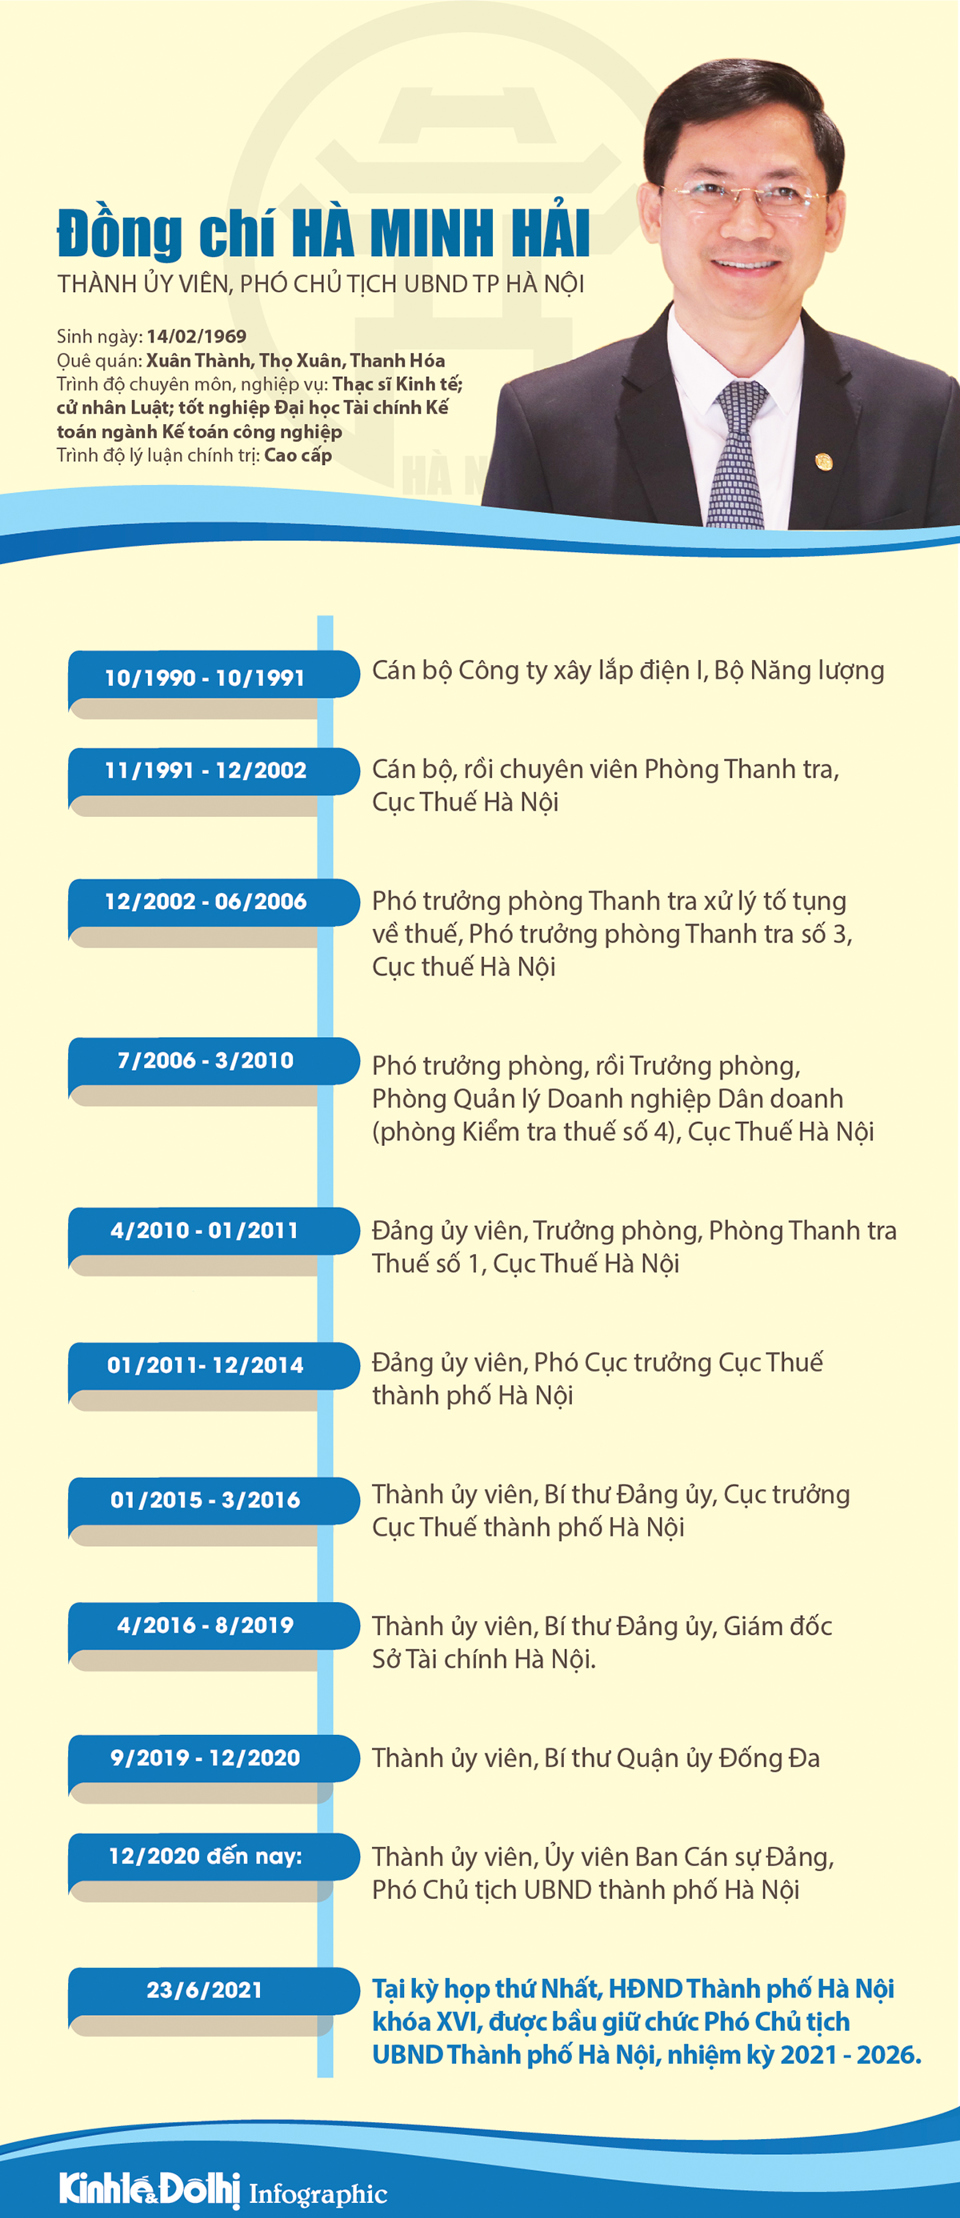 [Infographic] Chân dung Phó Chủ tịch UBND TP Hà Nội Hà Minh Hải - Ảnh 1